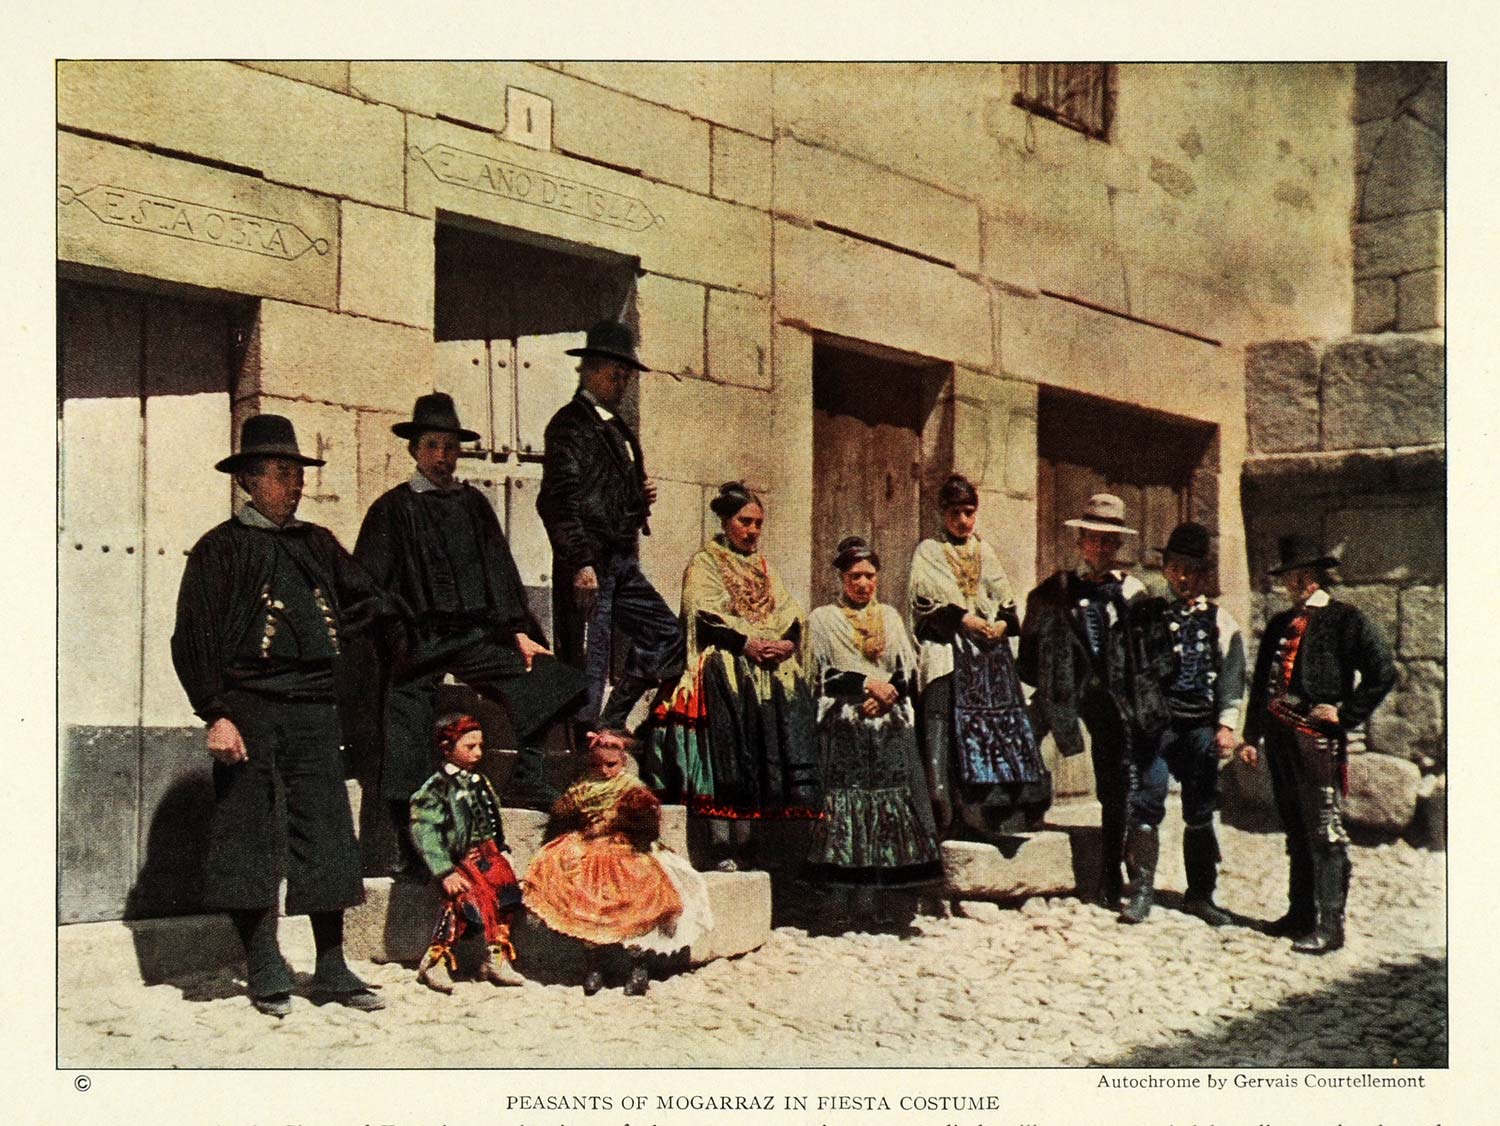 1924 Print Spain Peasant Mogarraz Fiesta Costume Gervais Courtellemont NGM2